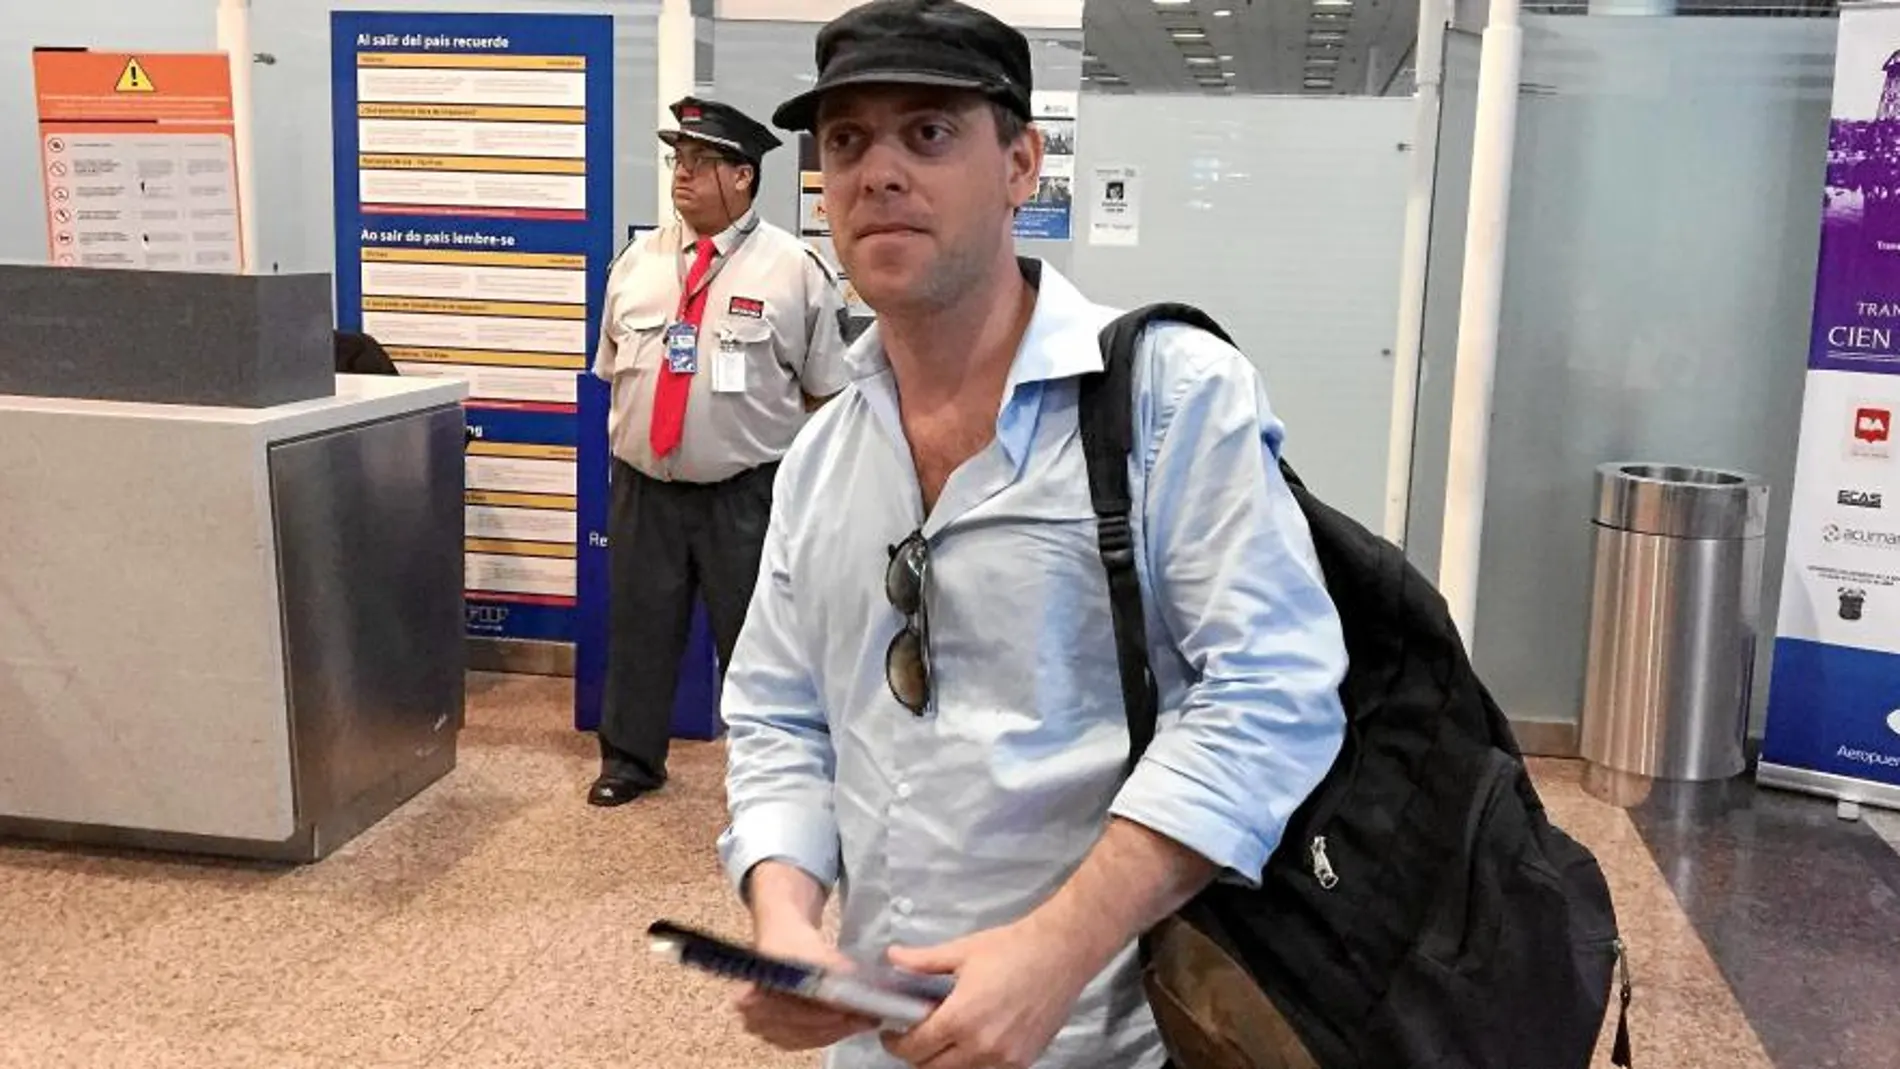 El periodista argentino Damian Pachter toma un avión con destino a Israel tras verse amenazado por revelar la muerte del fiscal Nisman